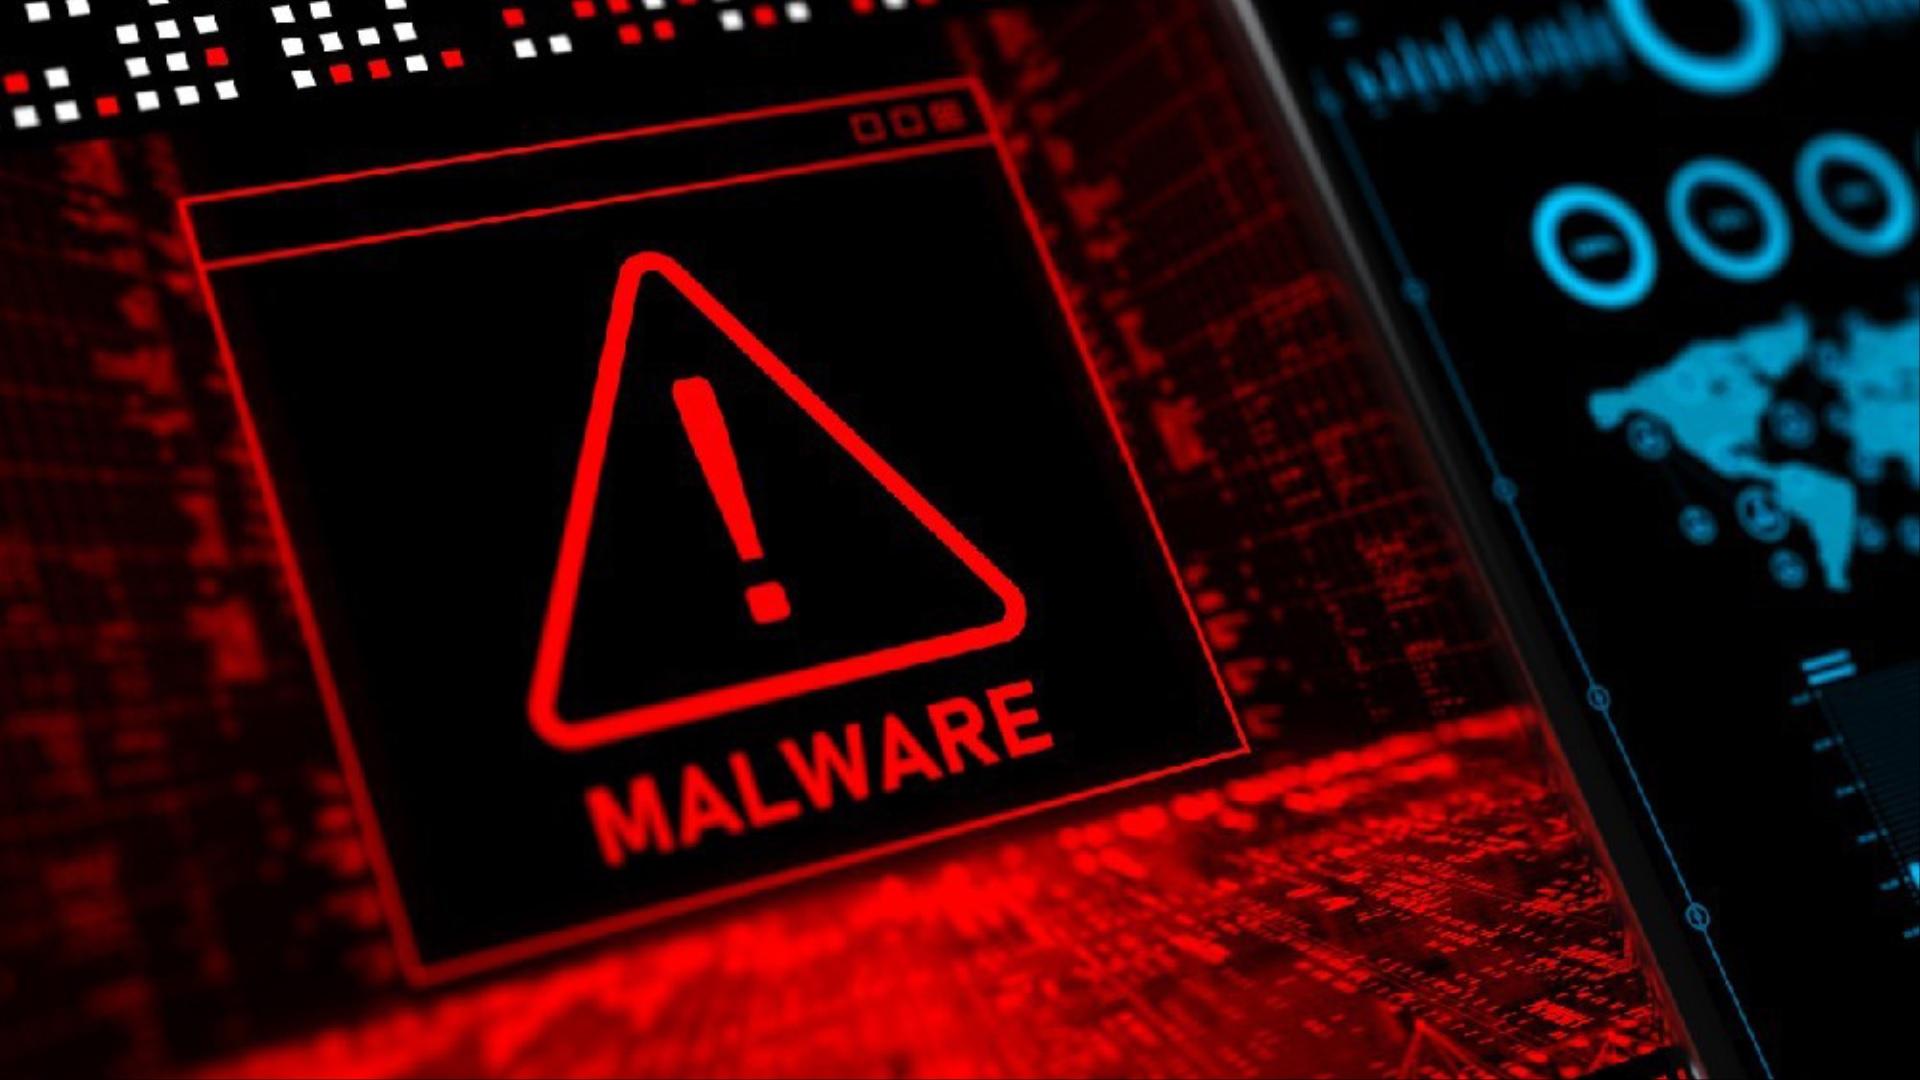 منظور از بدافزار یا malware چیست و انواع آن کدامند؟